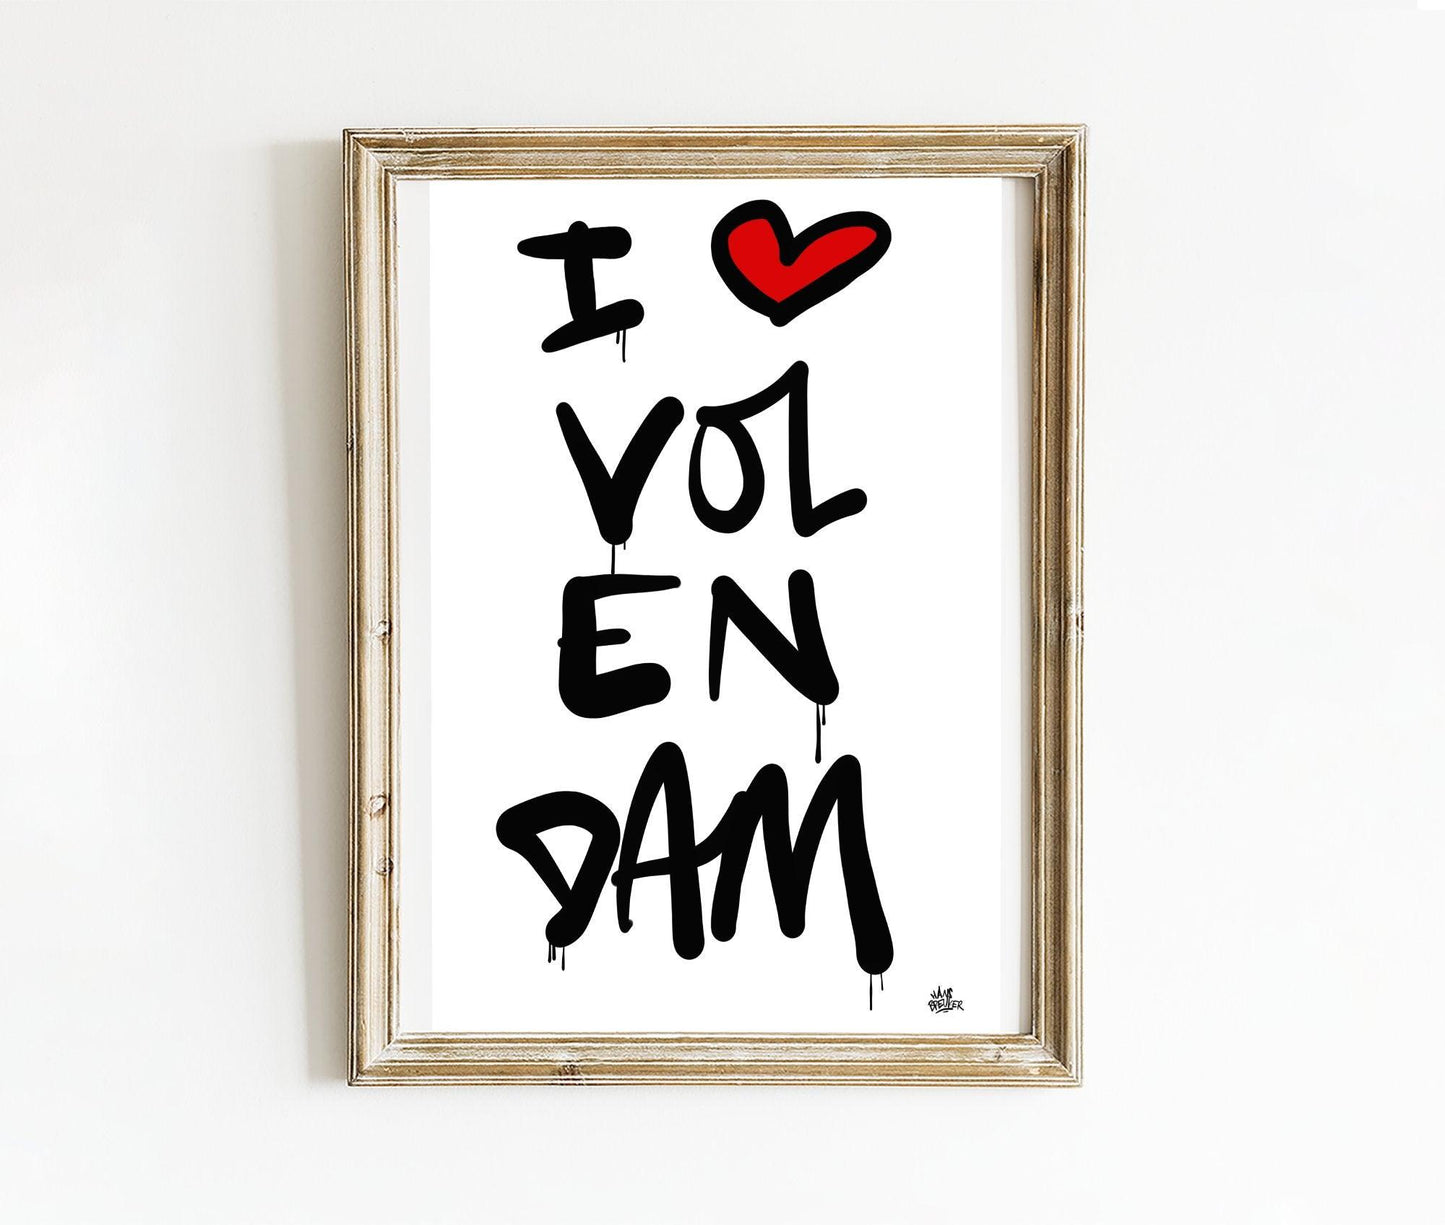 Poster Volendam - Hans Breuker